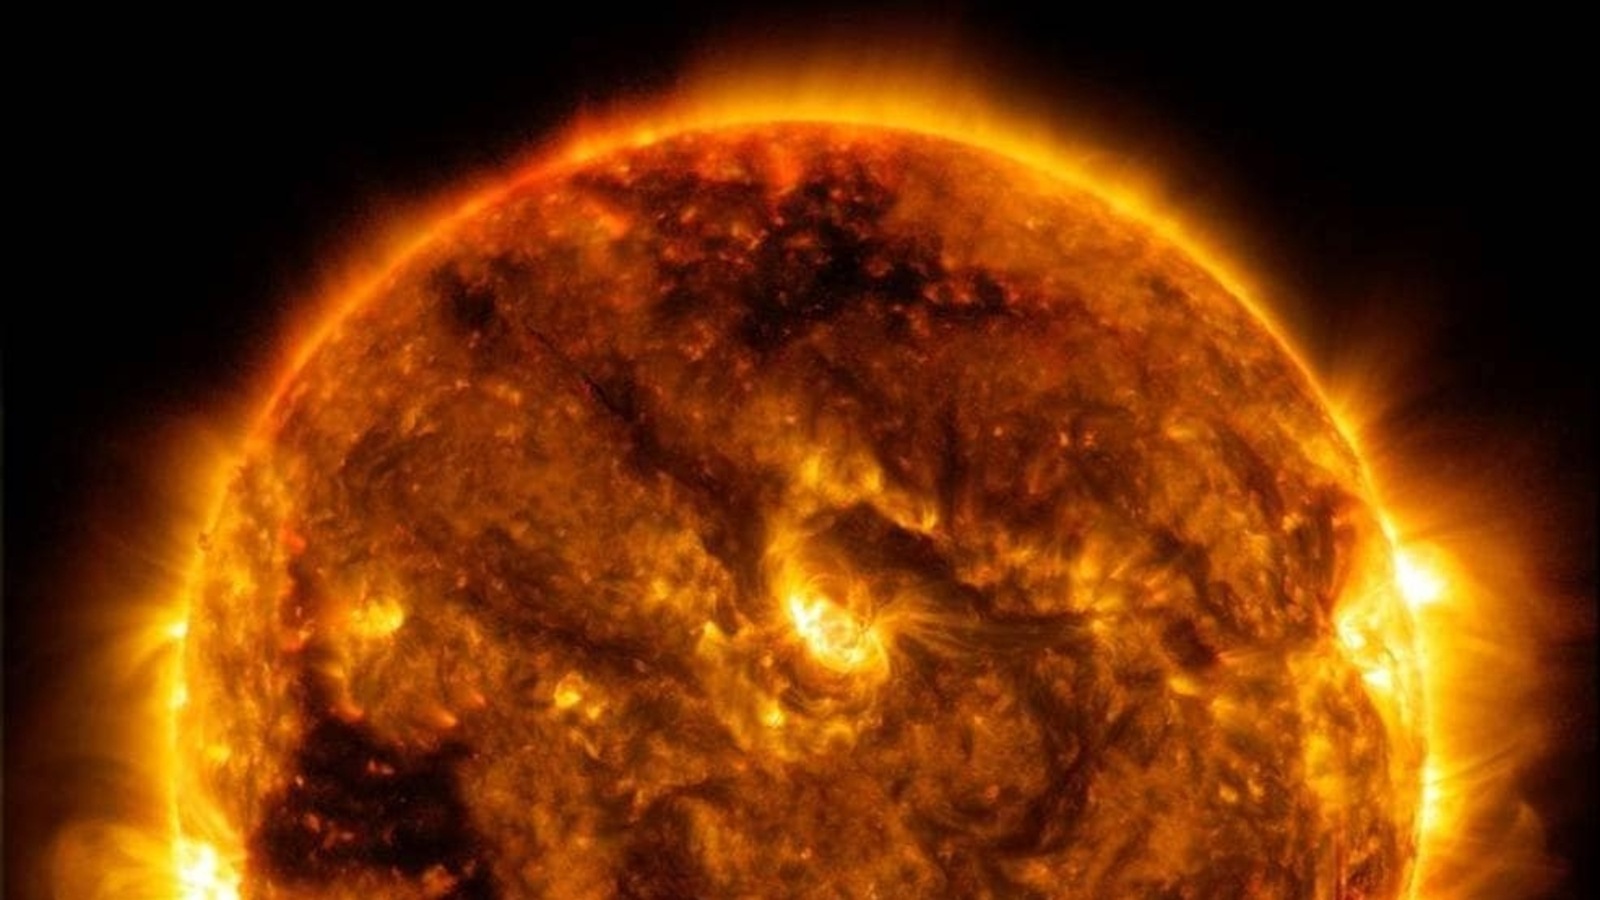 Słońce emituje ogromny rozbłysk słoneczny, który może wpłynąć na komunikację satelitarną: CESSI